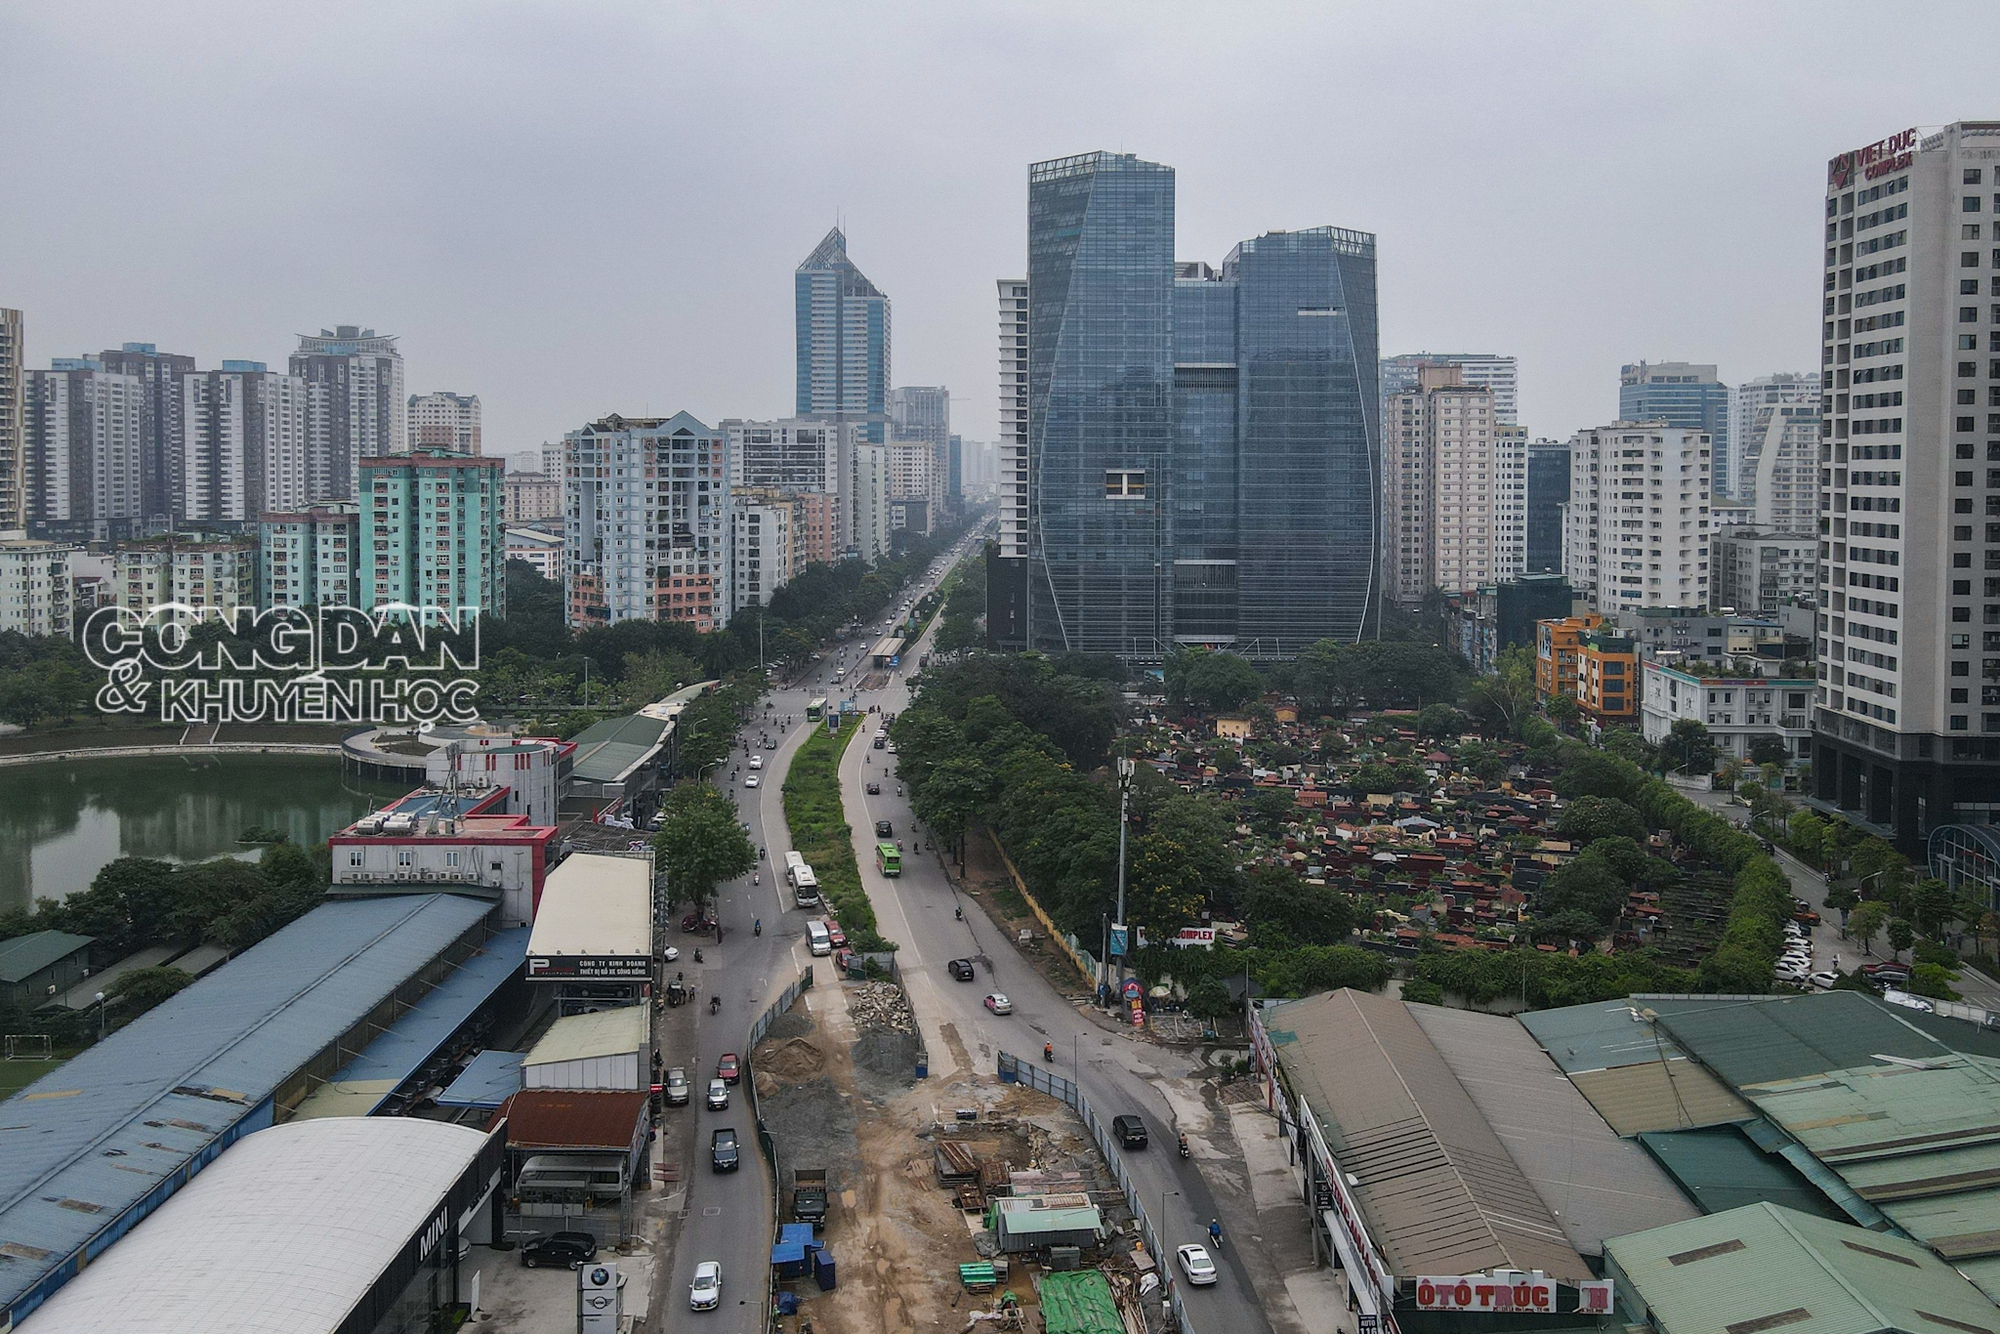 Hàng loạt sai phạm băm nát khu đô thị Lê Văn Lương - Trung Hoà, tòa nhà được điều chỉnh thêm hàng chục tầng. - Ảnh 1.